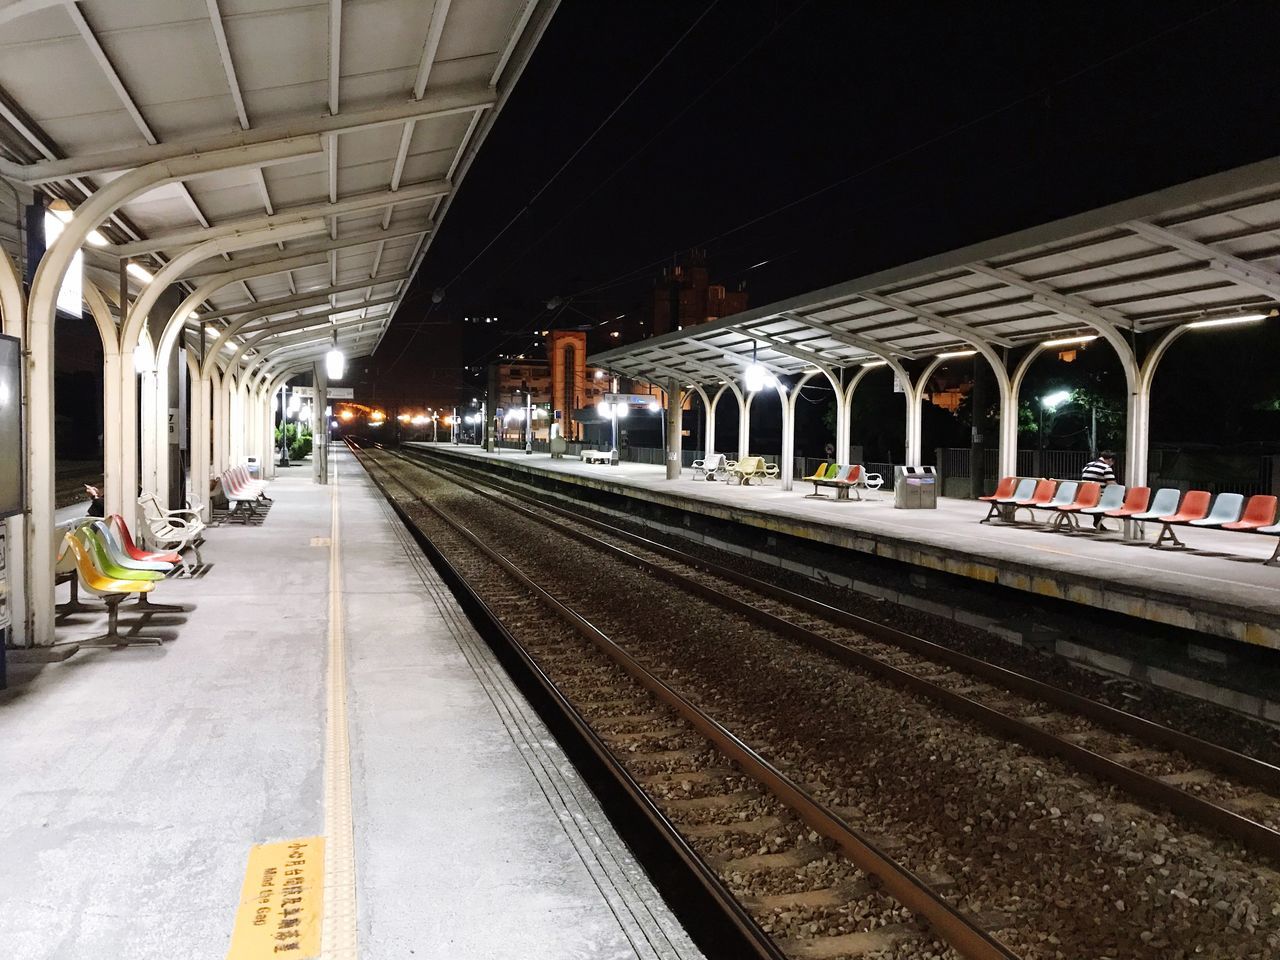 TRAIN AT RAILROAD STATION PLATFORM AT NIGHT